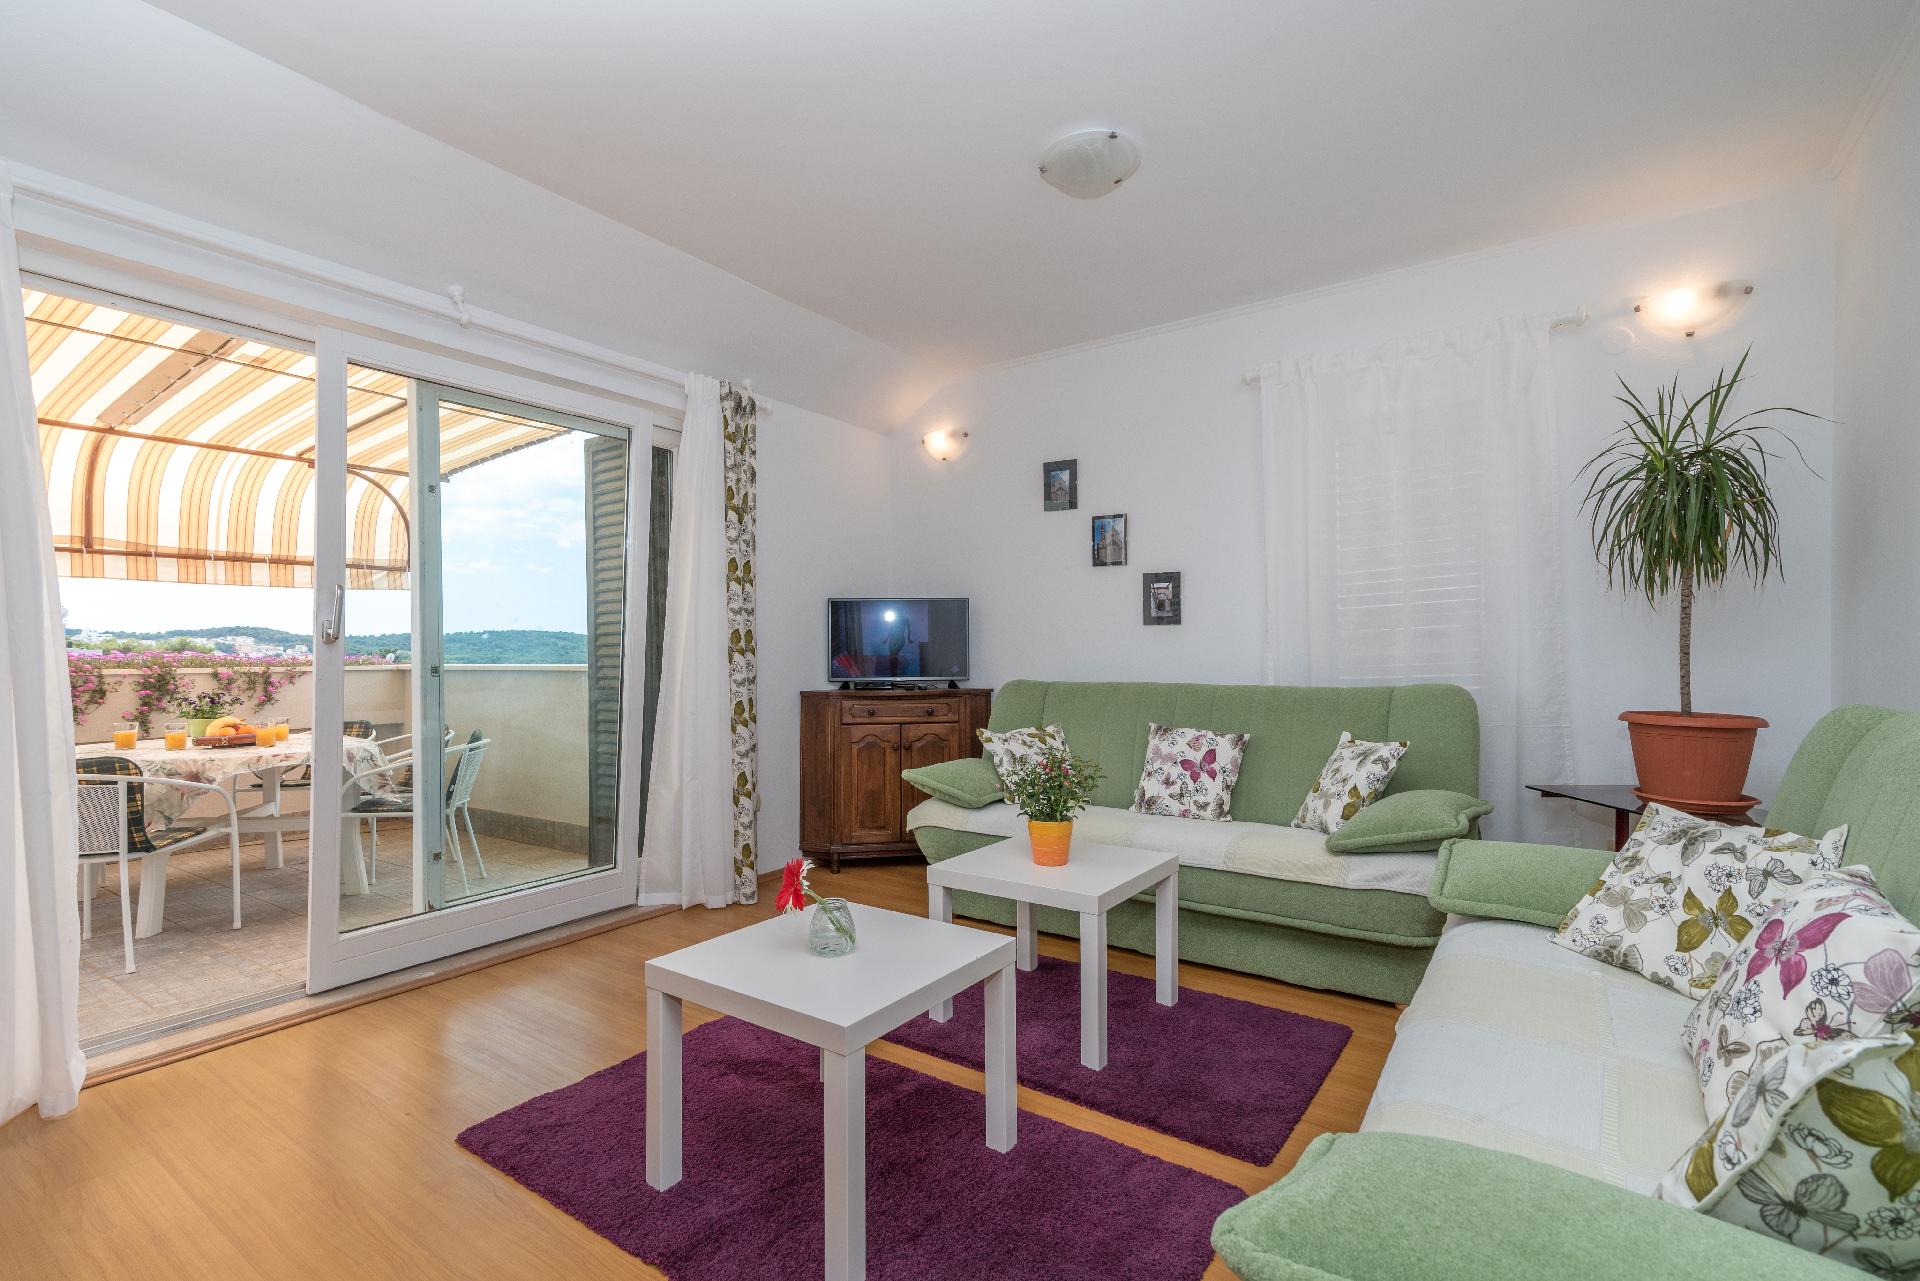 Ferienwohnung für 8 Personen ca. 135 m²  Ferienwohnung in Kroatien